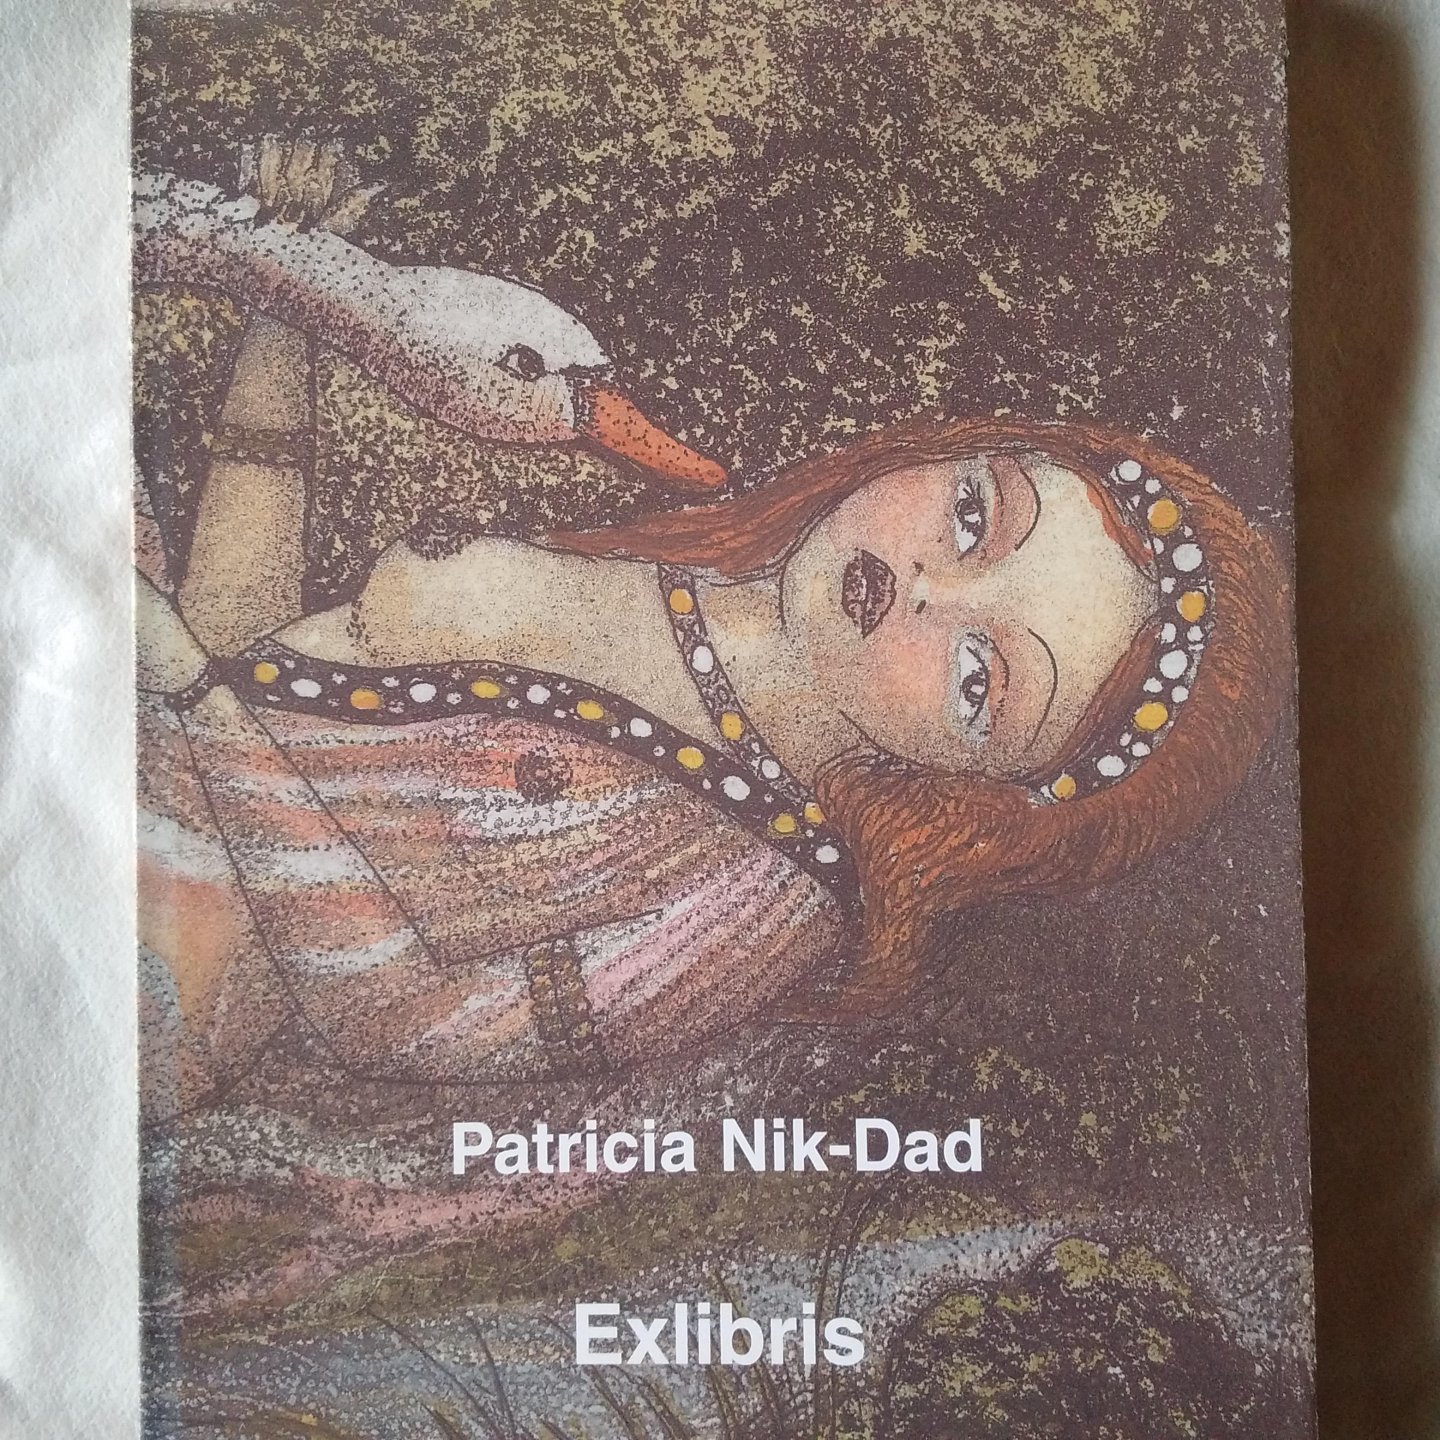 Briele, Luc van den - Patricia Nik-Dad Exlibris